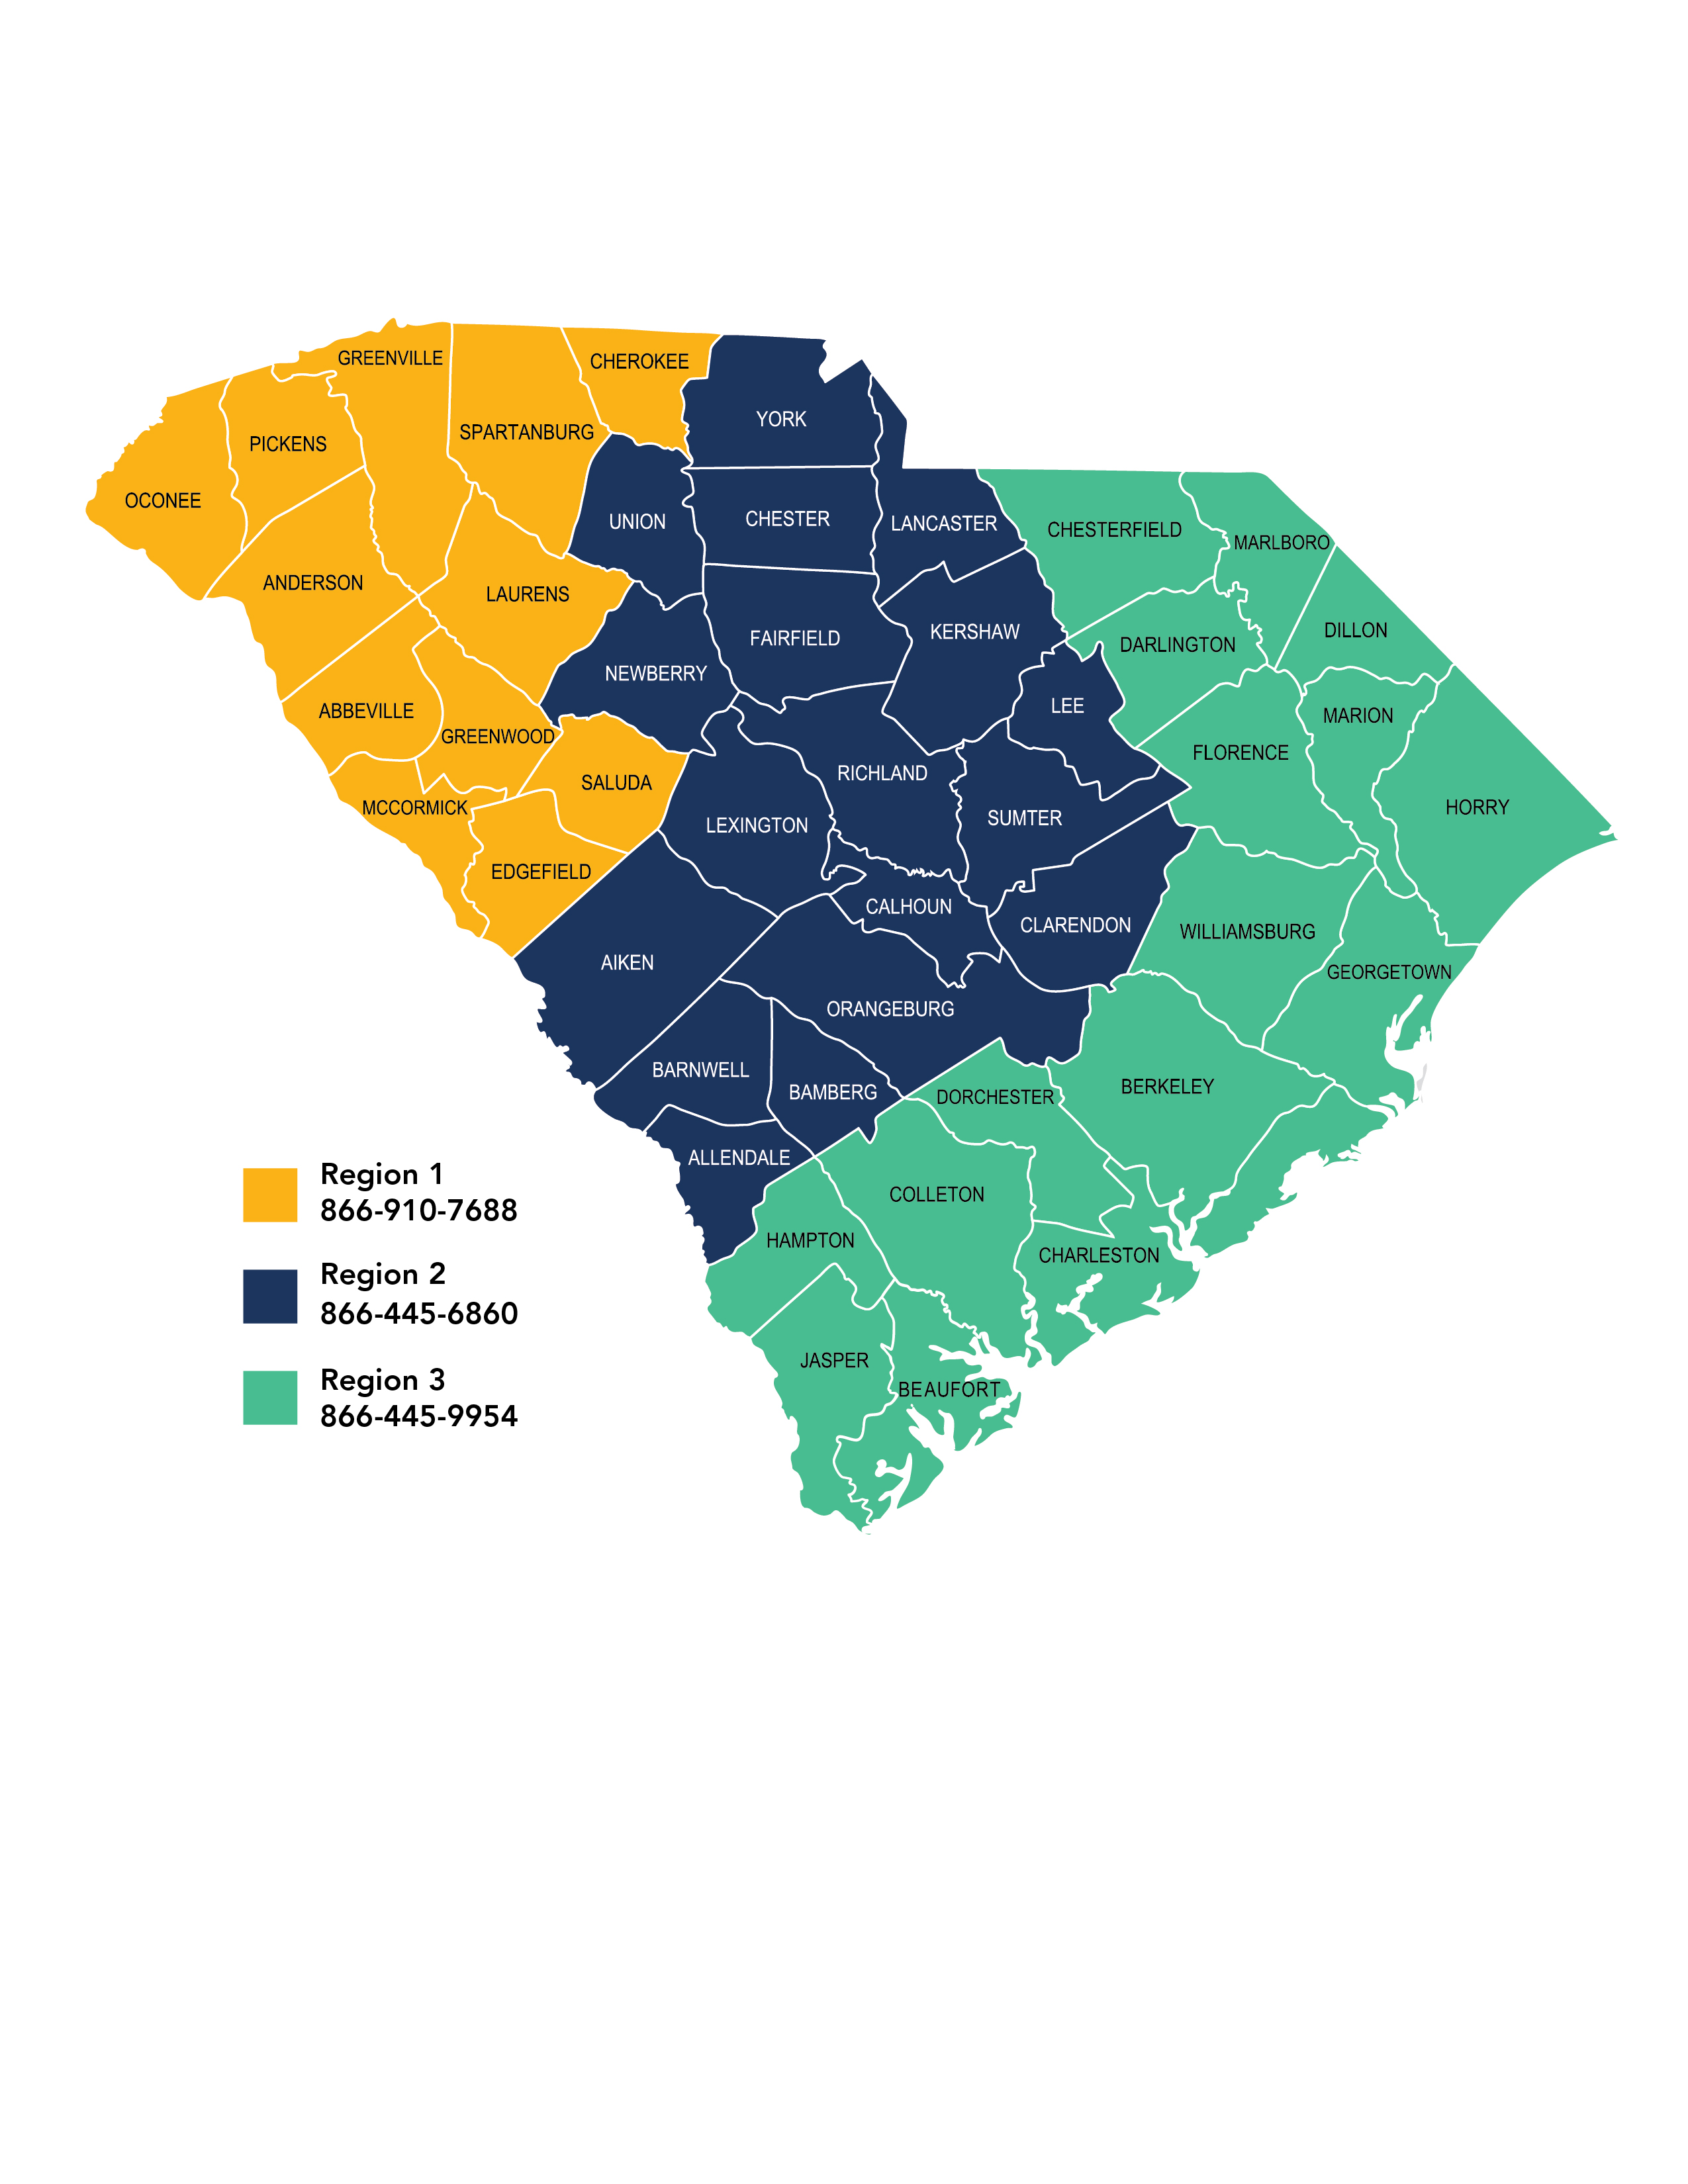 Mapa de Carolina del Sur codificado por colores para tres regiones